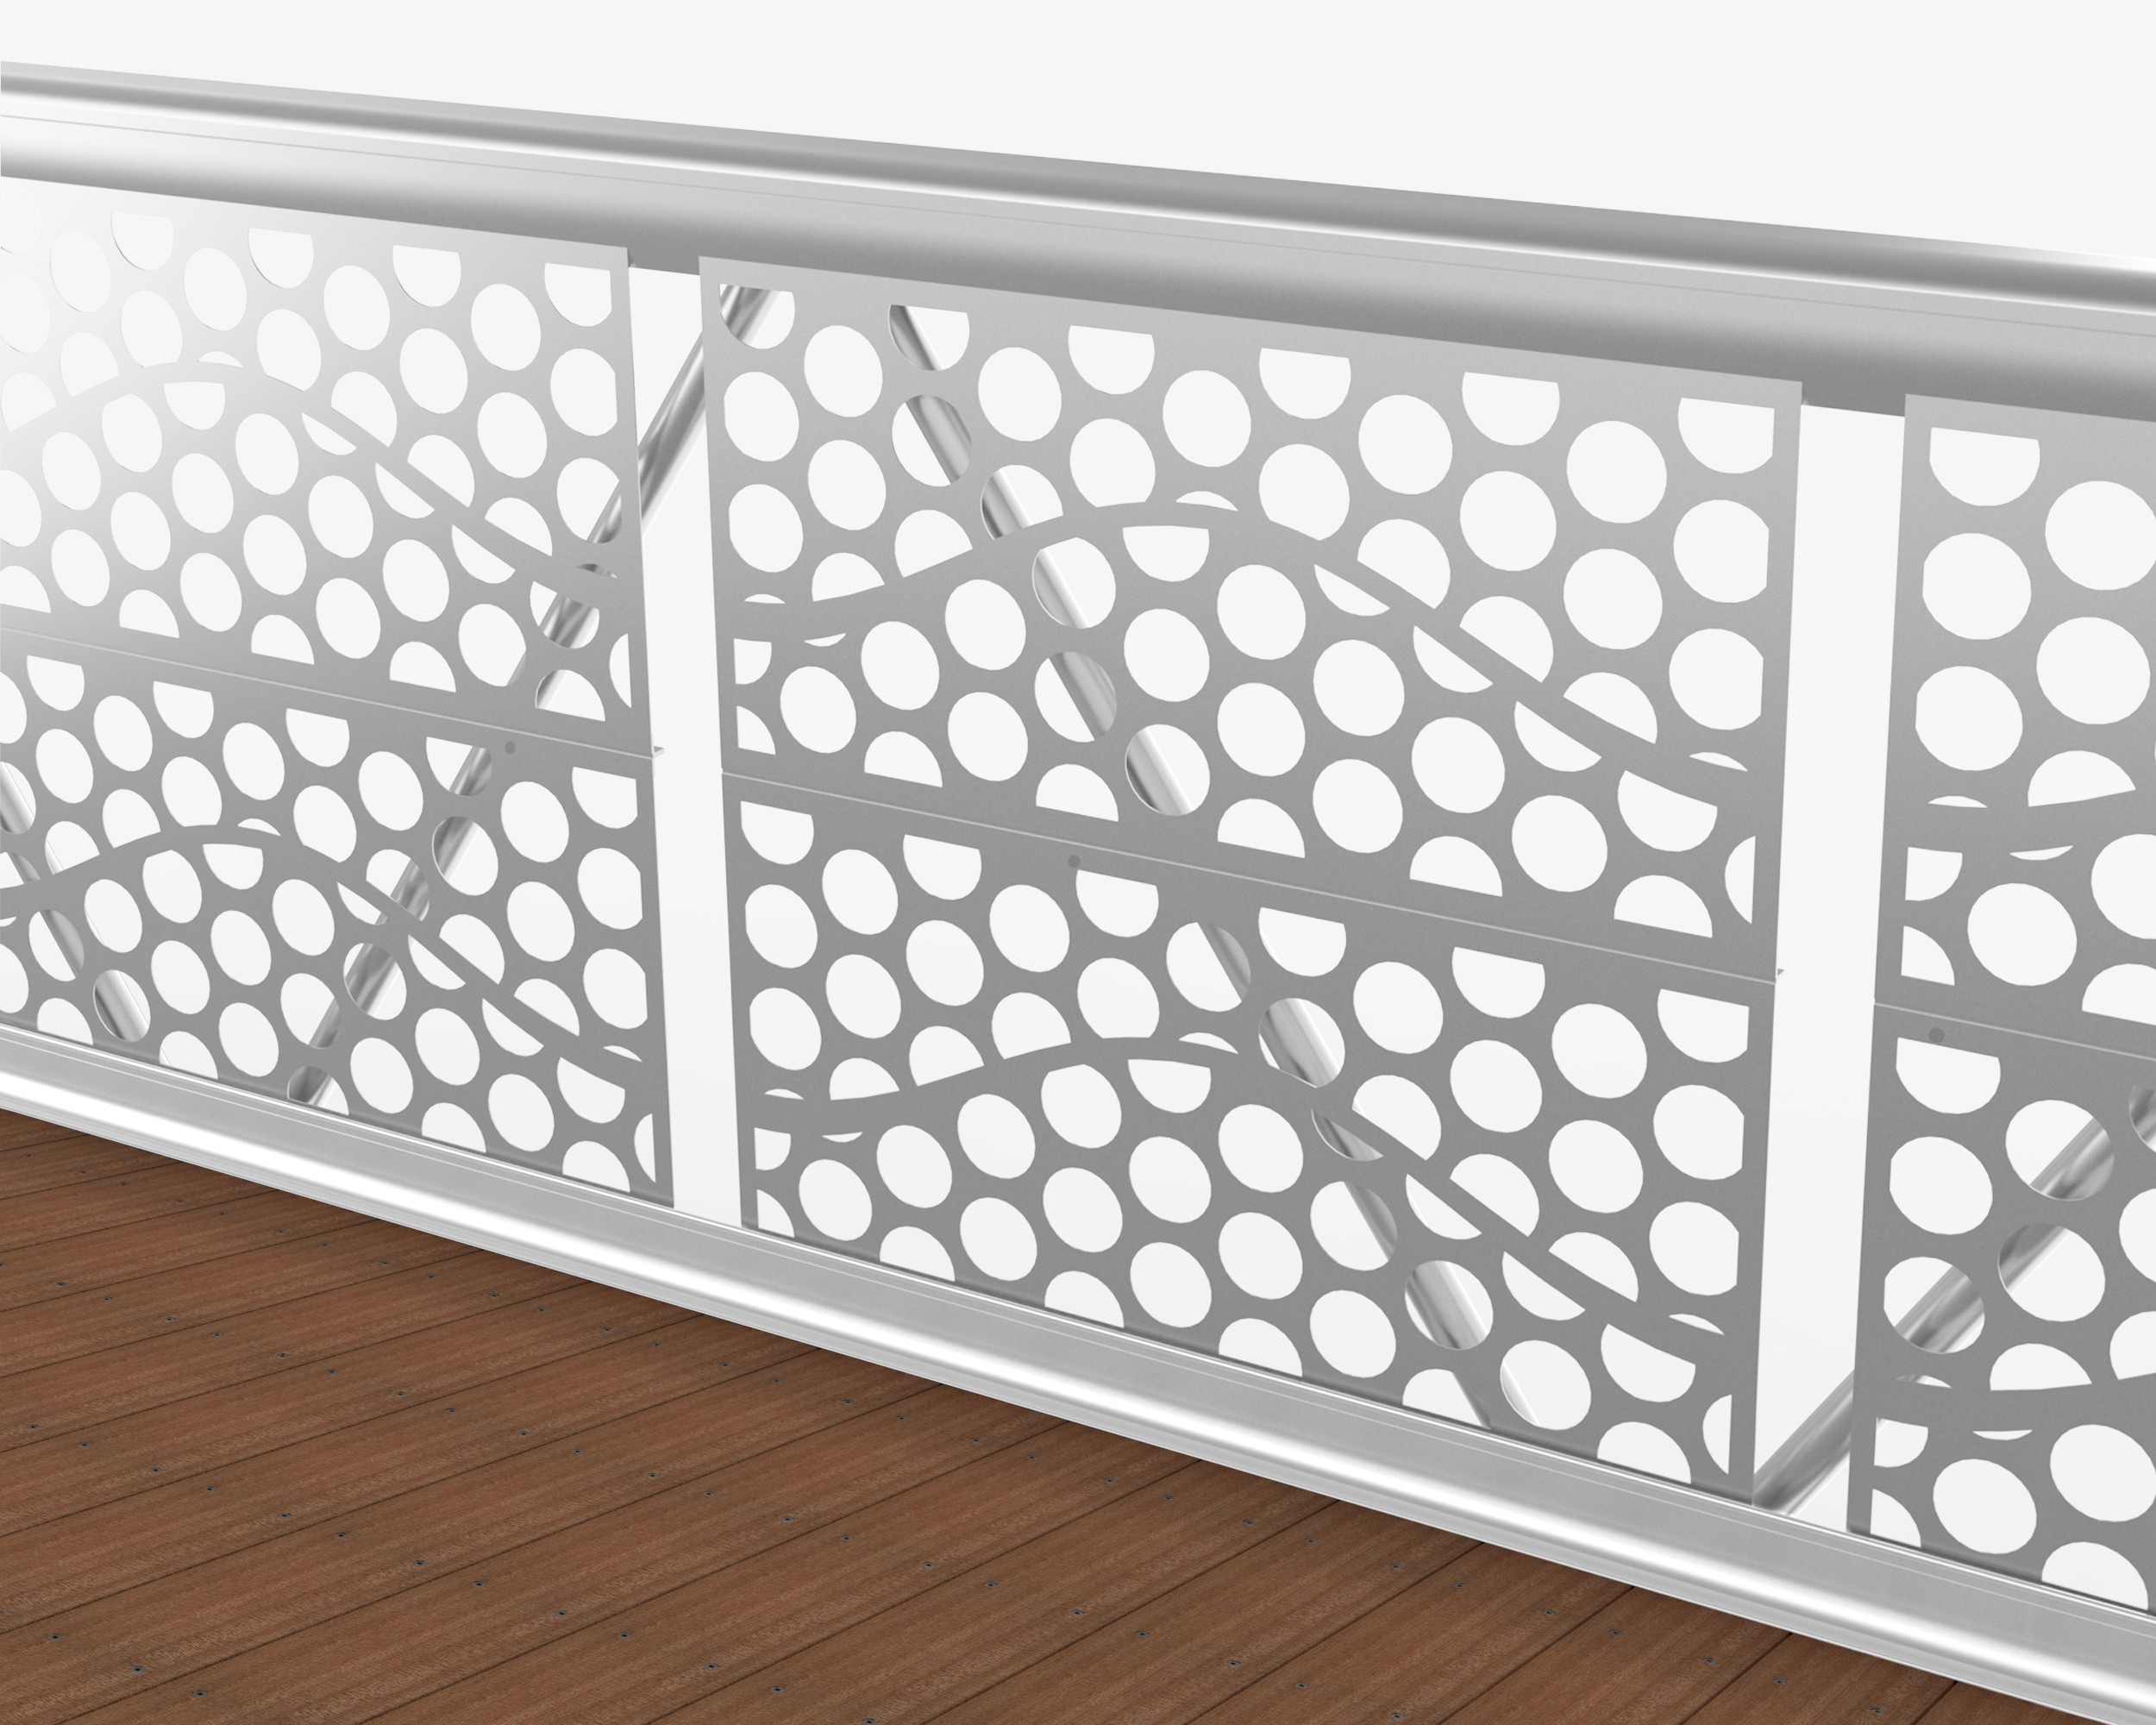 Guardrail with custom design on weld-free aluminum bridge